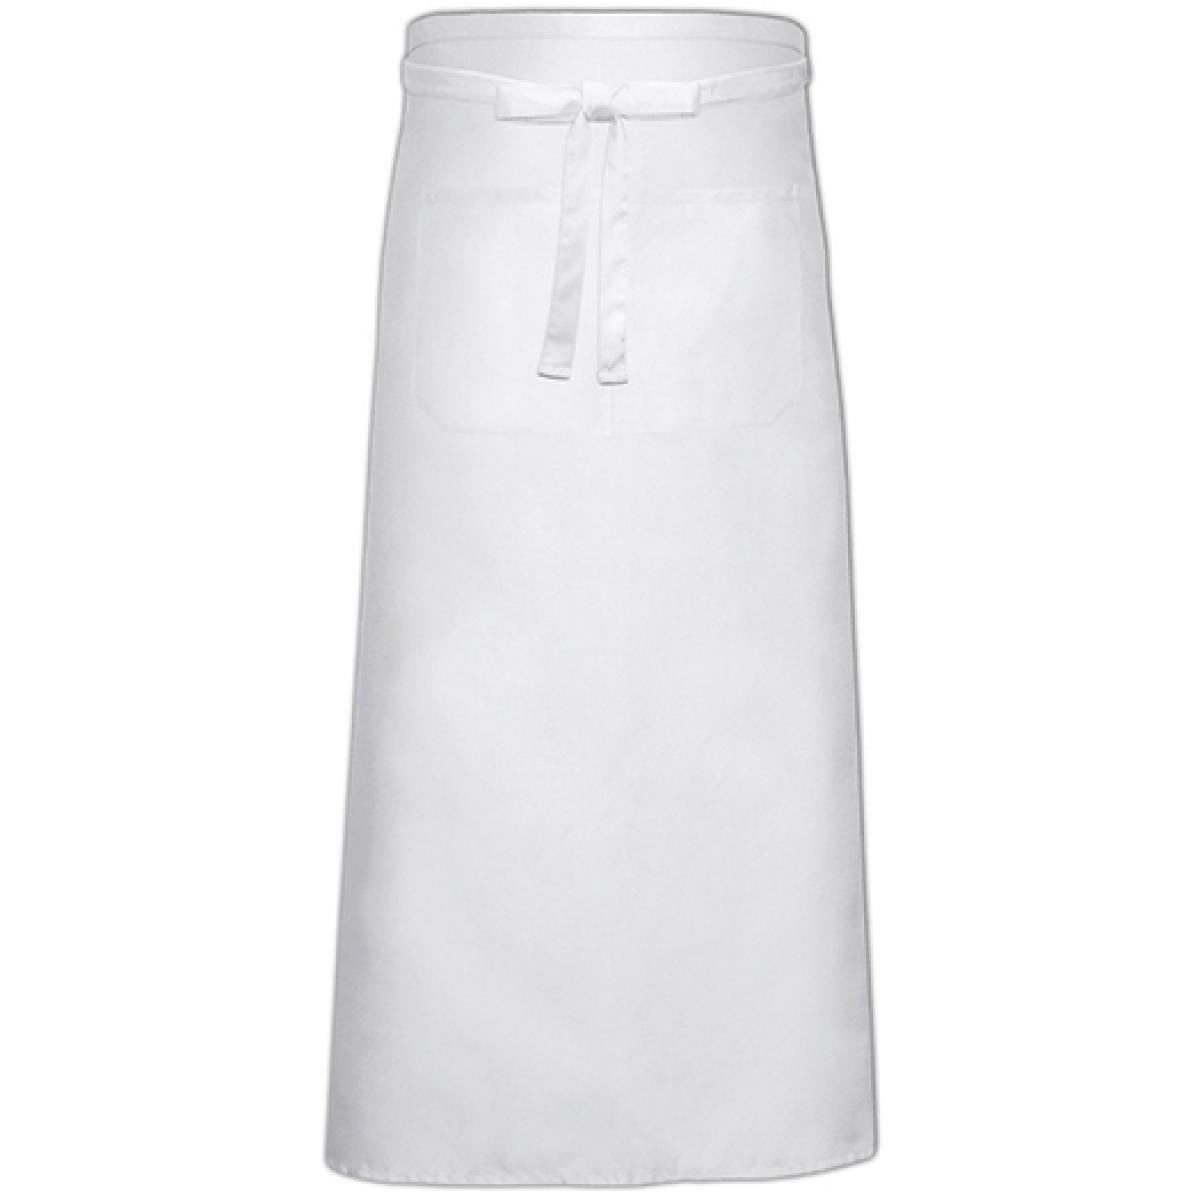 Hersteller: Link Kitchen Wear Herstellernummer: FS100120 Z Artikelbezeichnung: Bistro Apron XL with Front Pocket - 120 x 100 cm Farbe: White